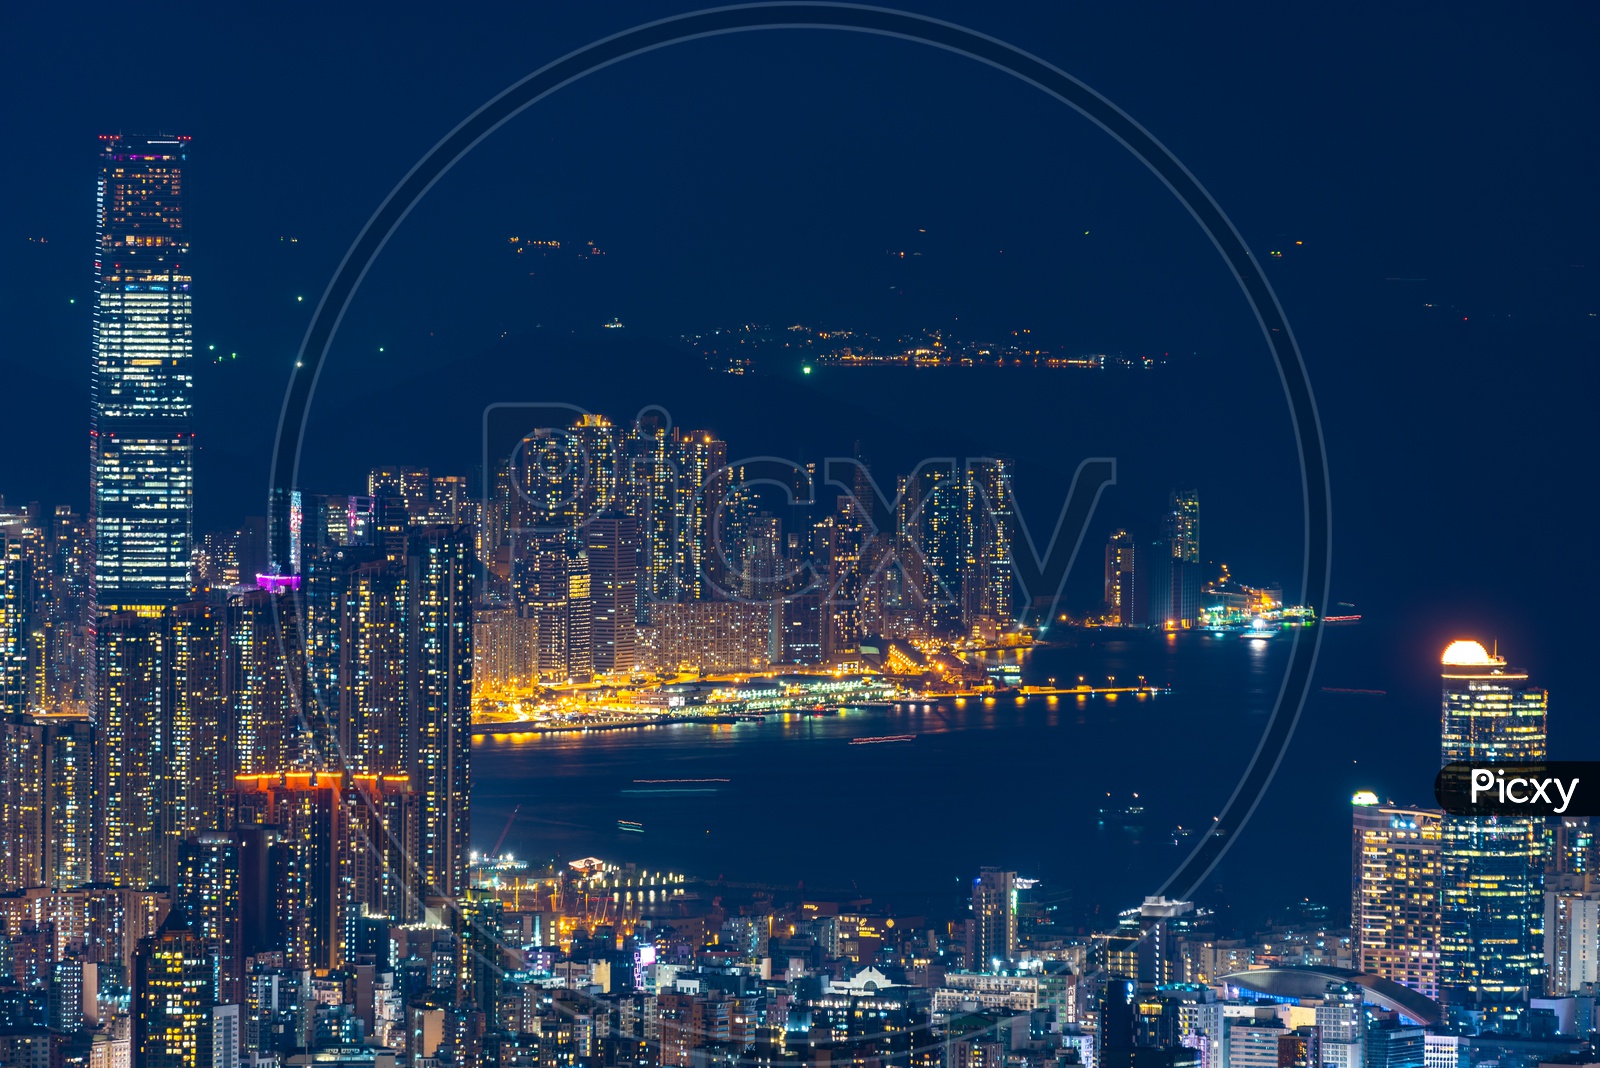 Hong Kong cityscape at night alongside Port area